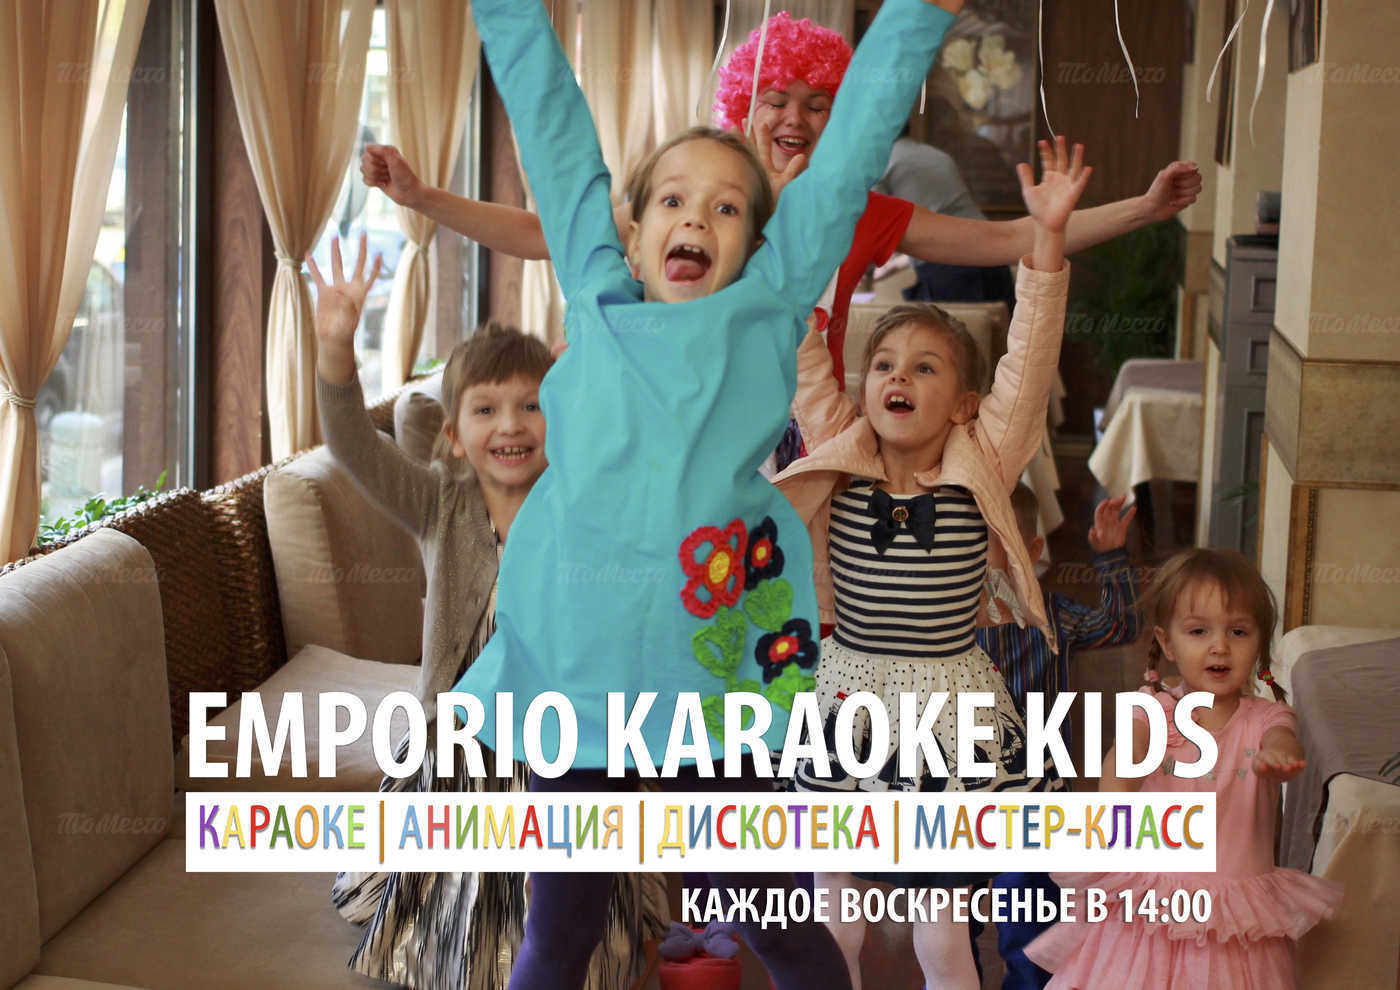 Emporio karaoke kids